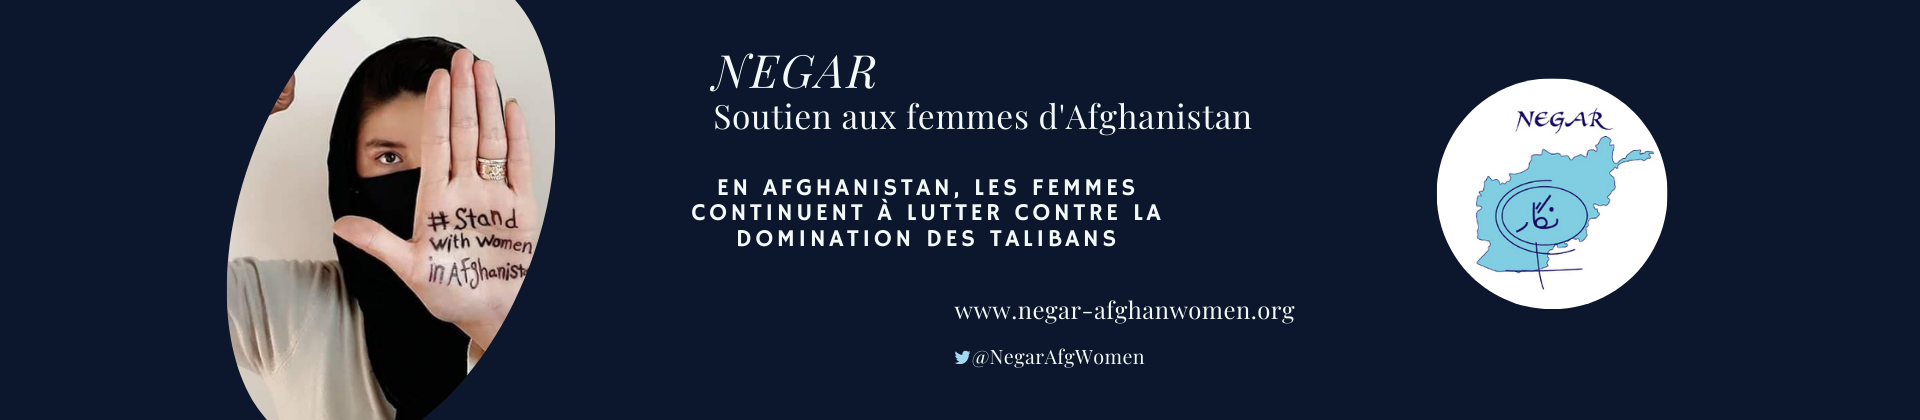 NEGAR, soutien aux femmes d'Afghanistan